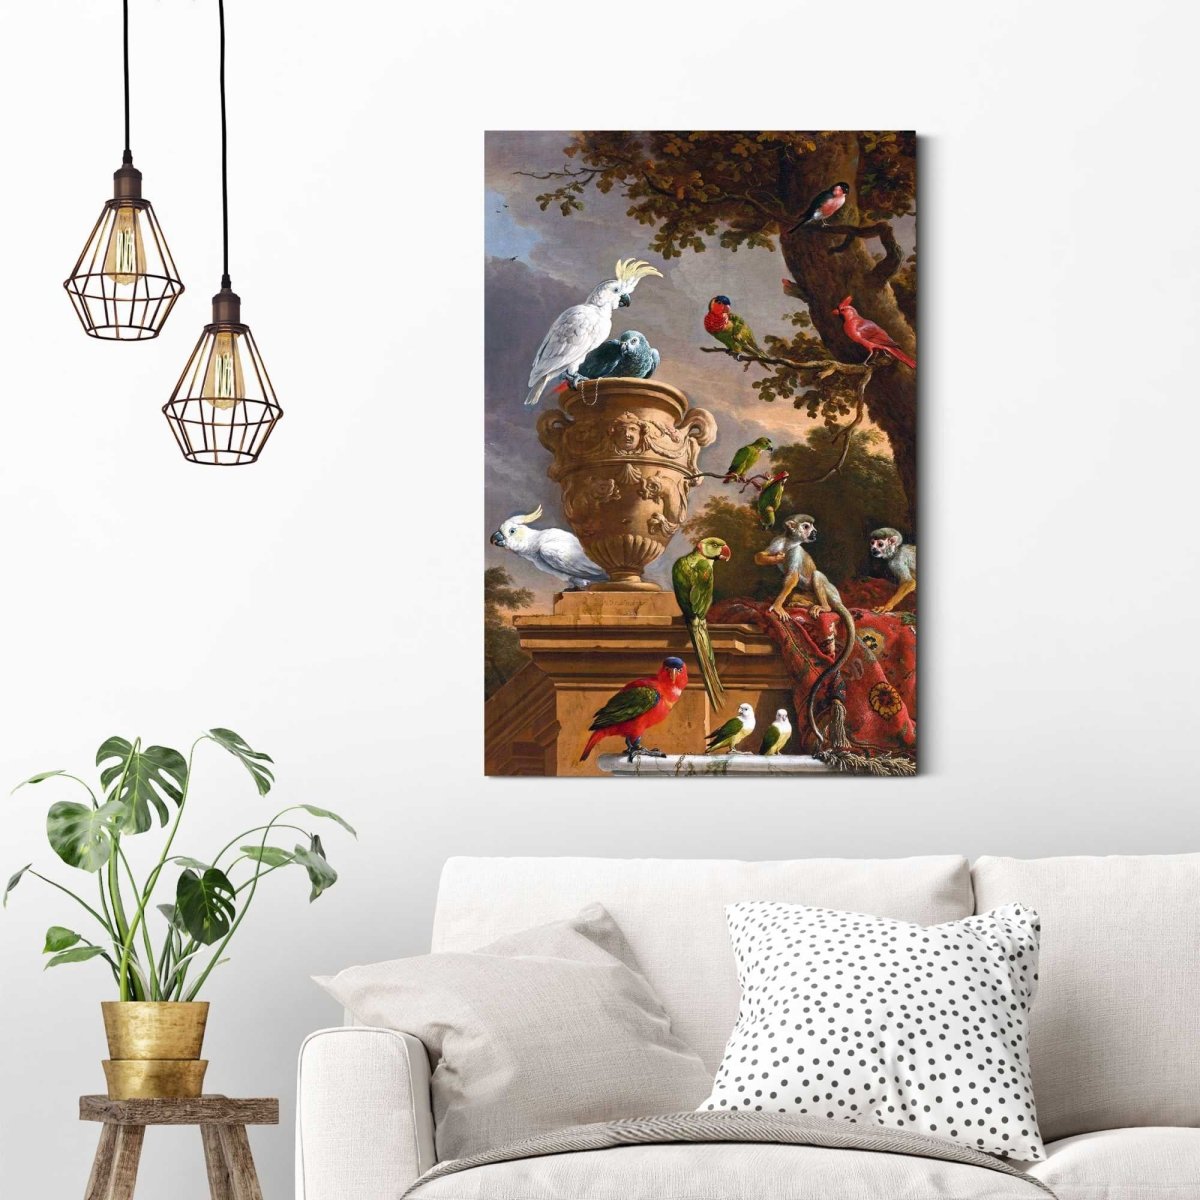 Schilderij d´Hondecoeter de Menagerie 90x60 - Reinders